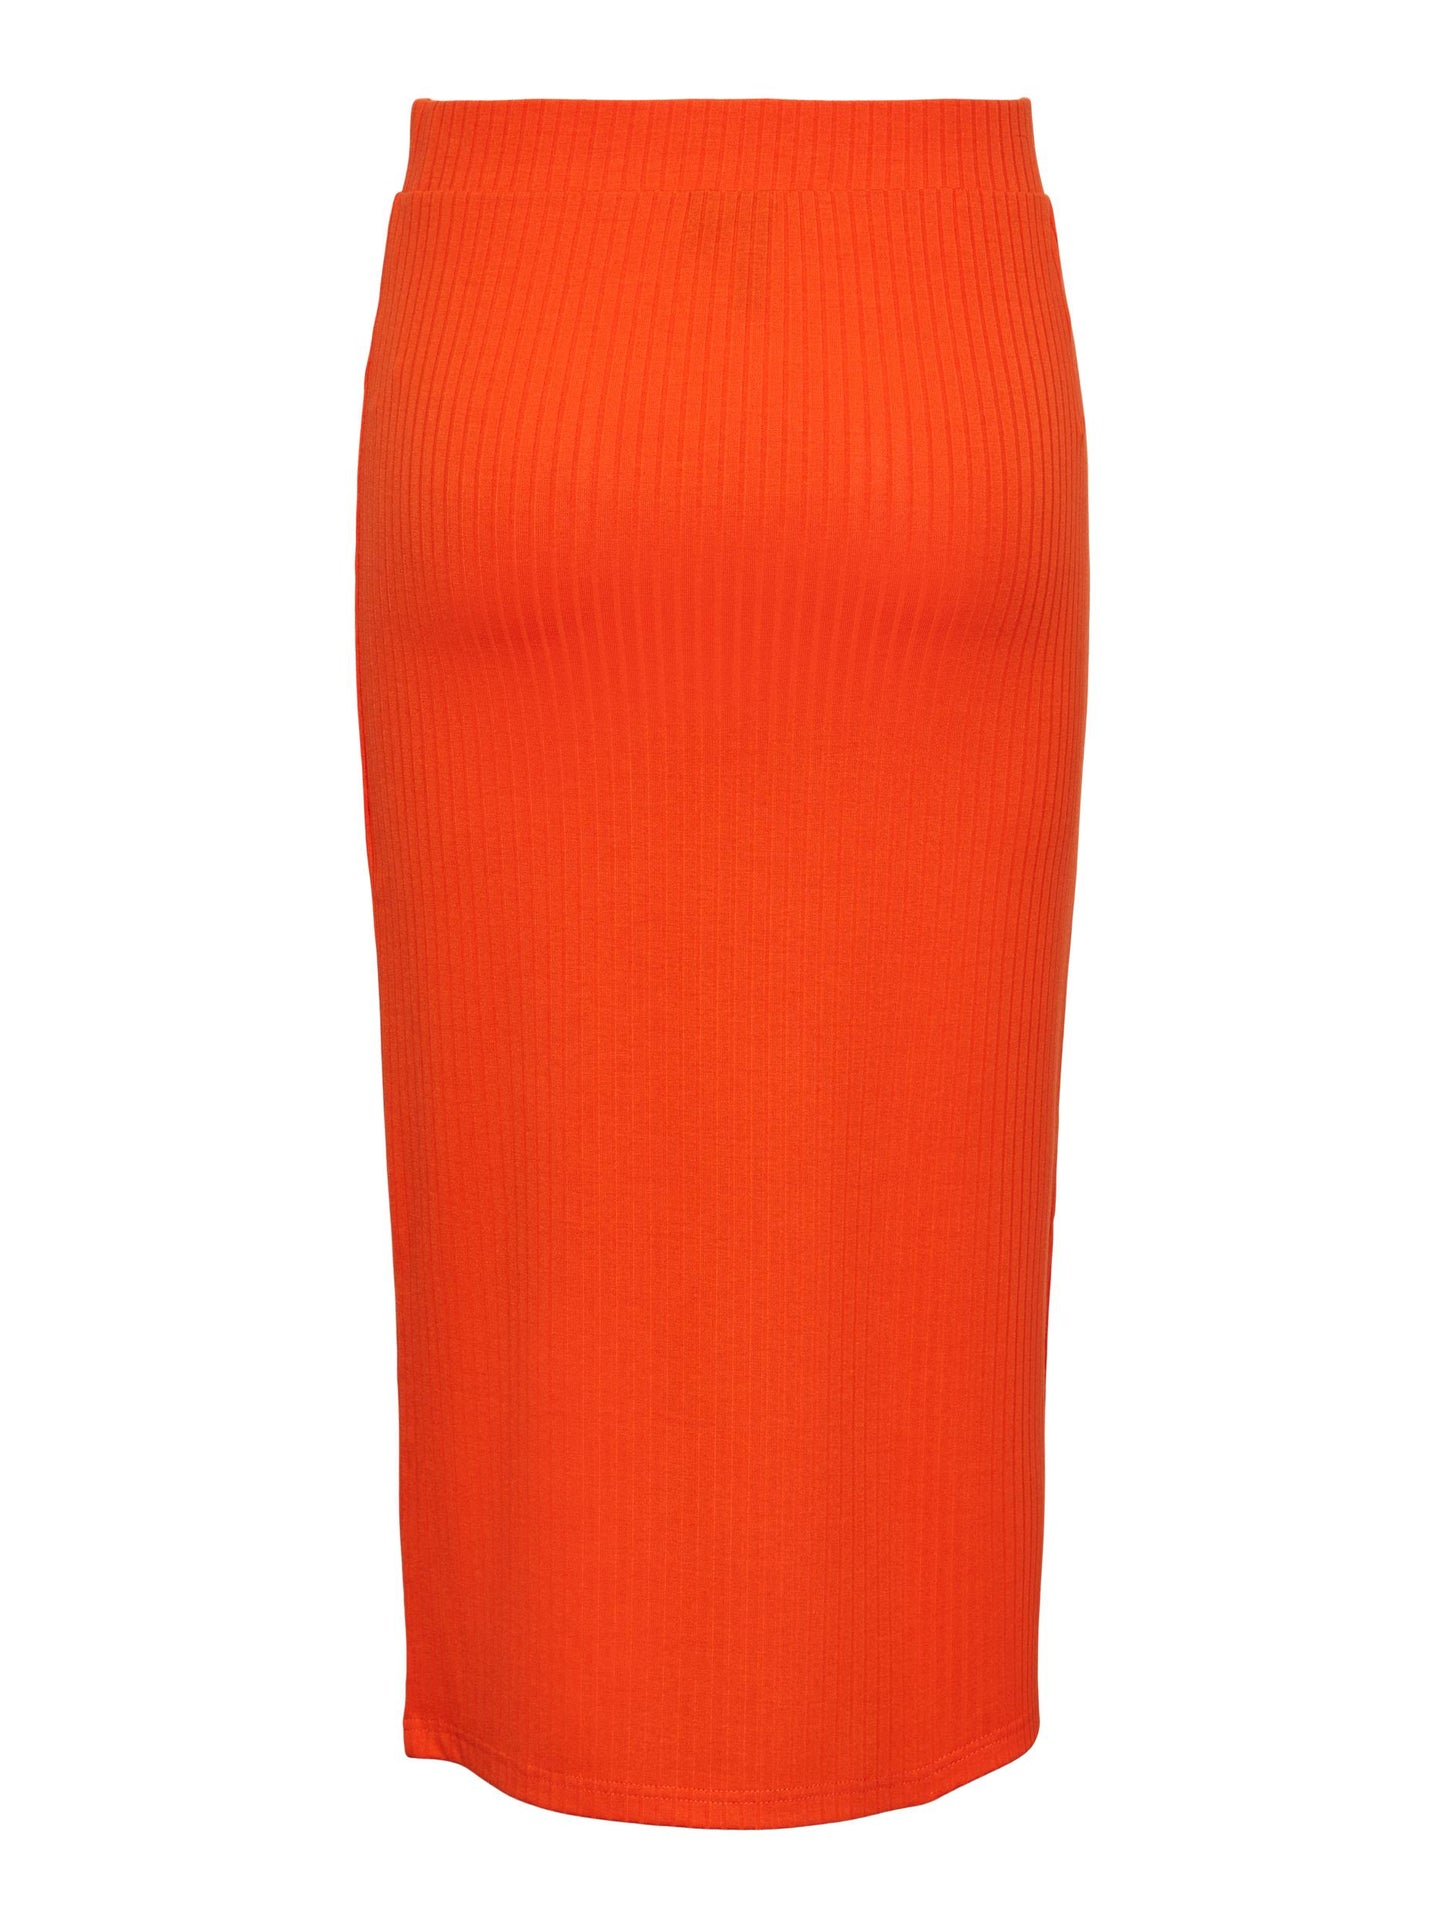 
                  
                    PCKYLIE Tangerine Tango Skirt
                  
                